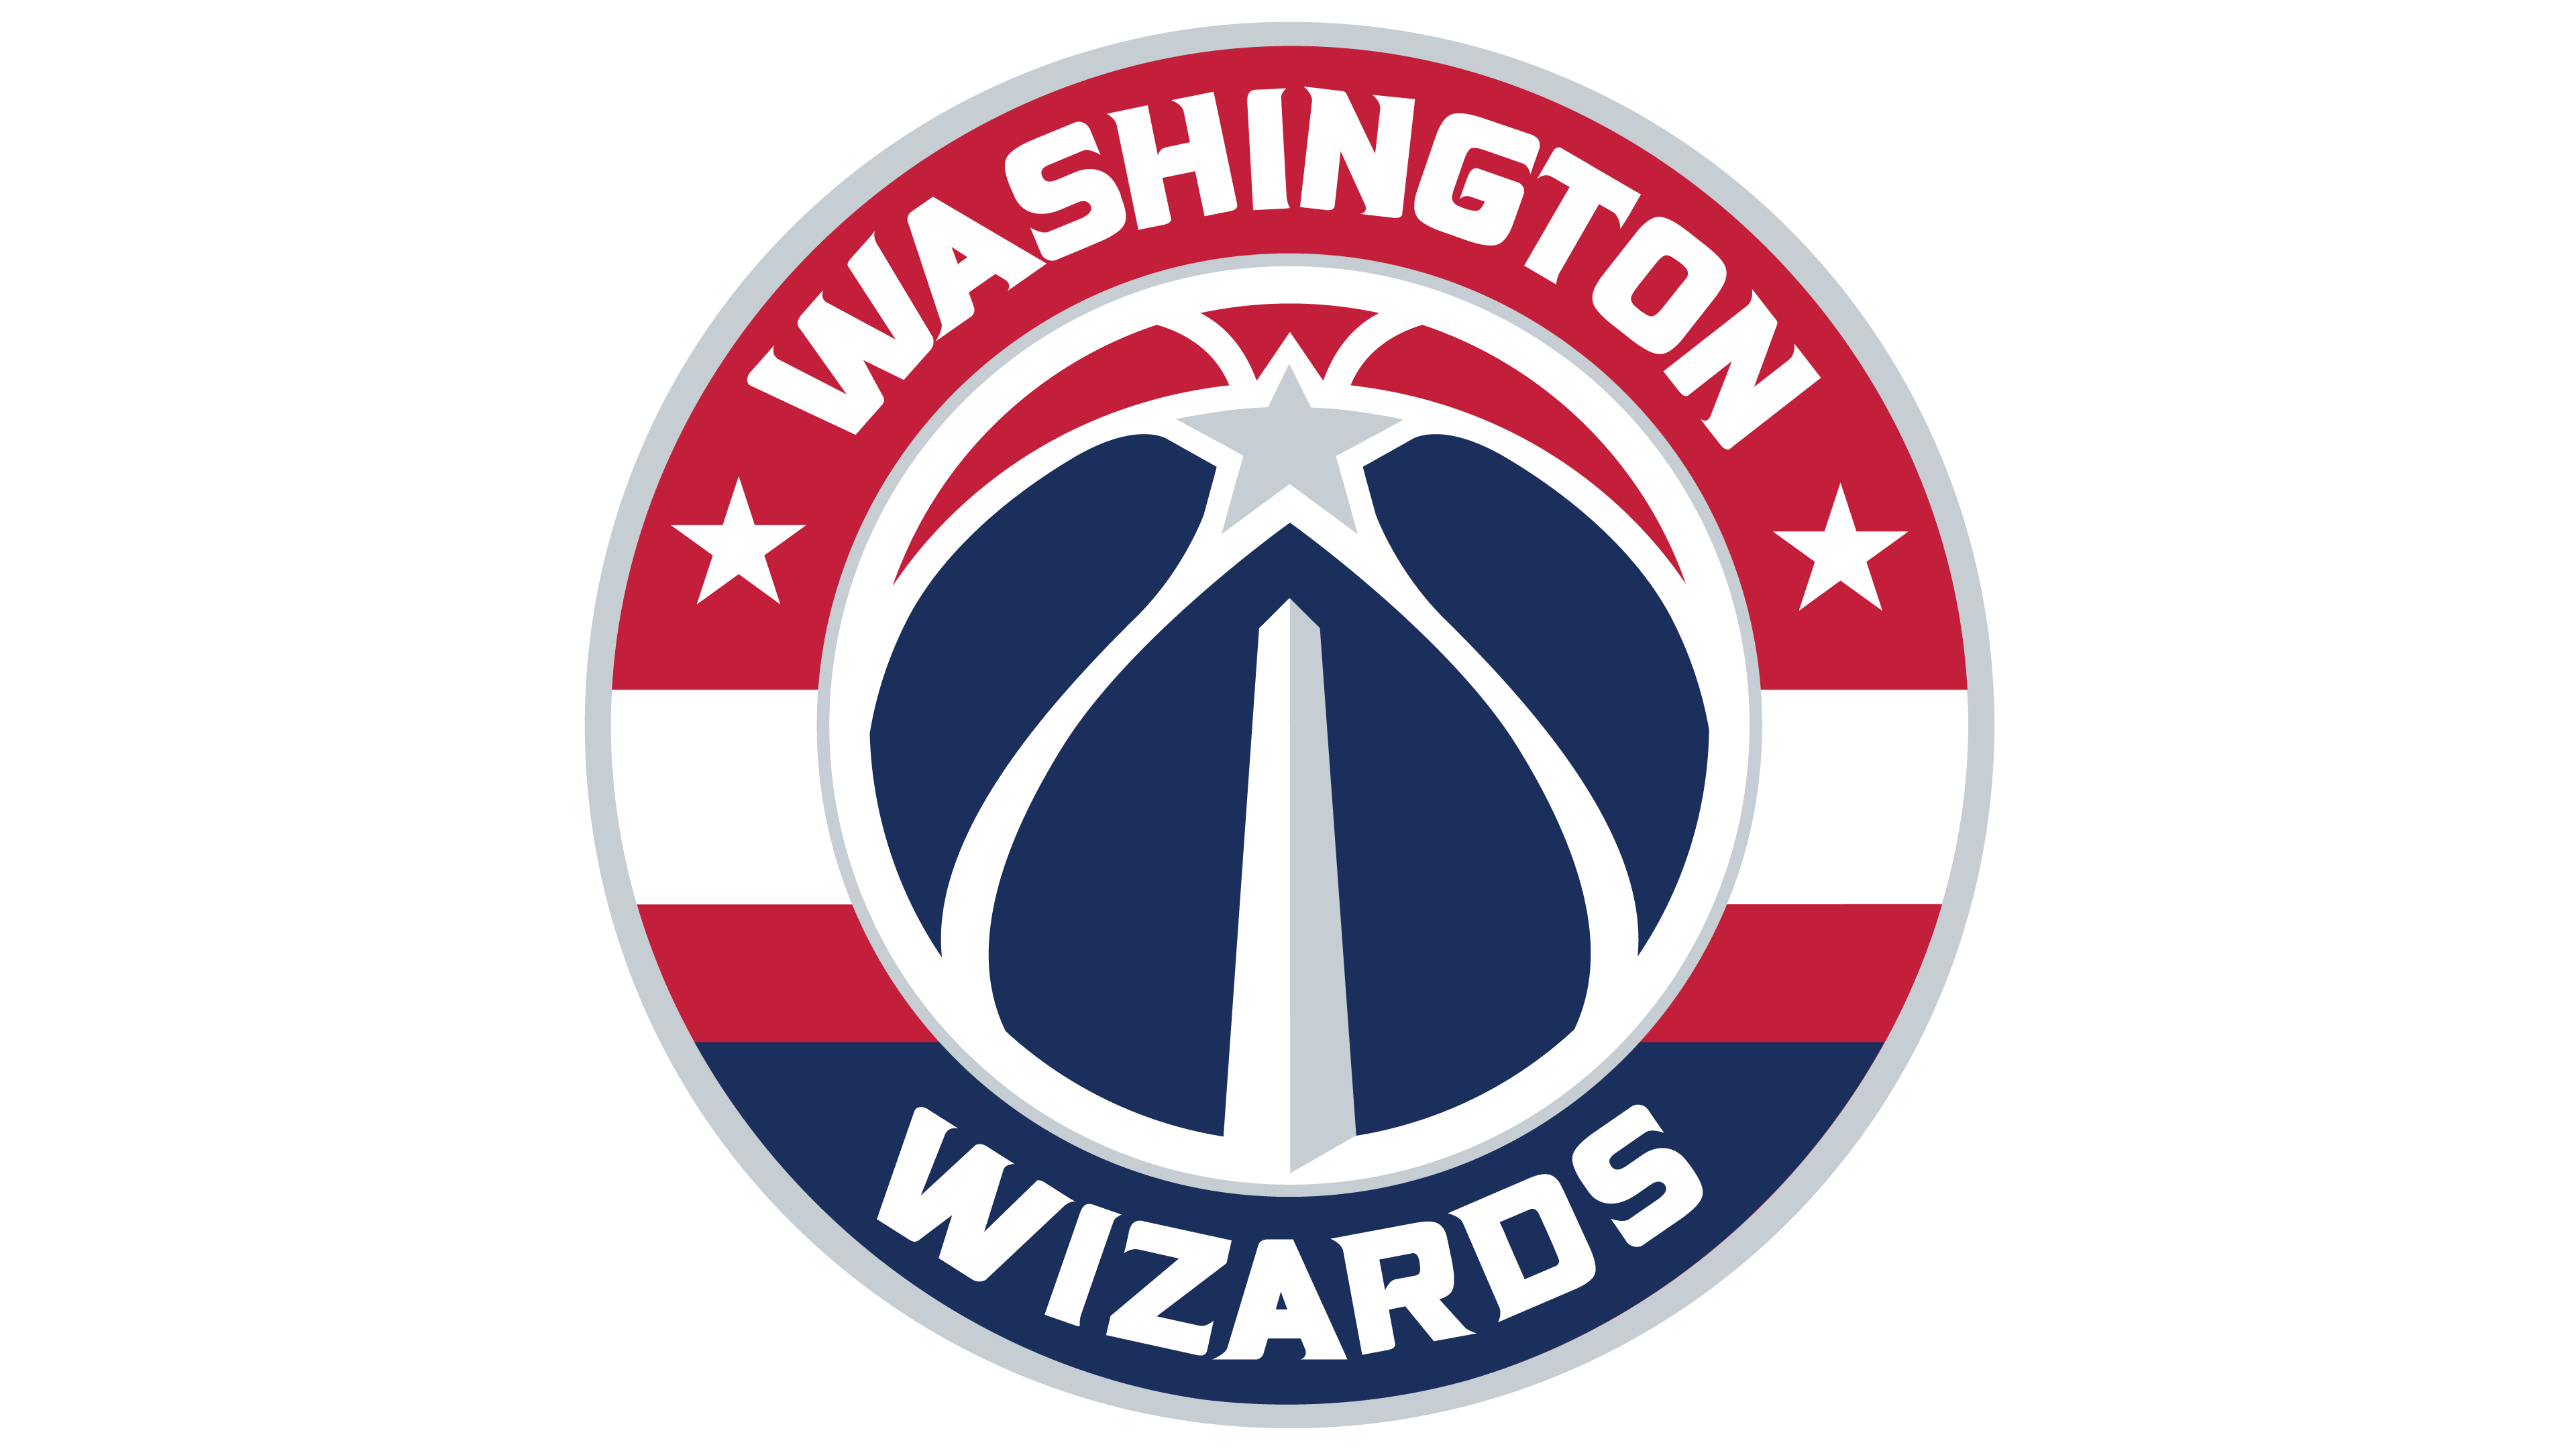 Washington Wizards Logo histoire, signification de l'emblème